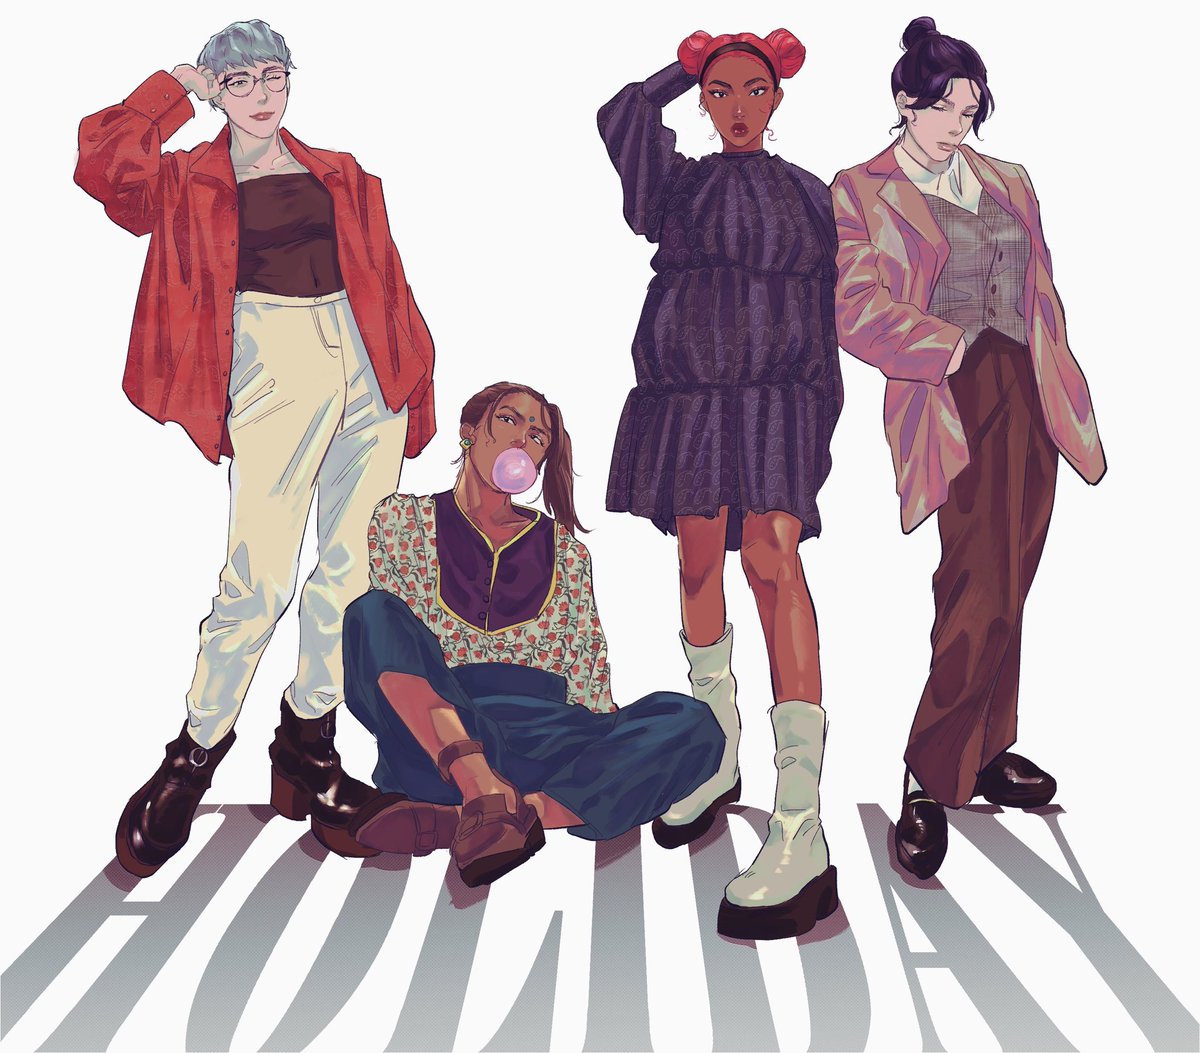 4girls multiple girls dark skin dark-skinned female hair bun hair behind ear pants  illustration images